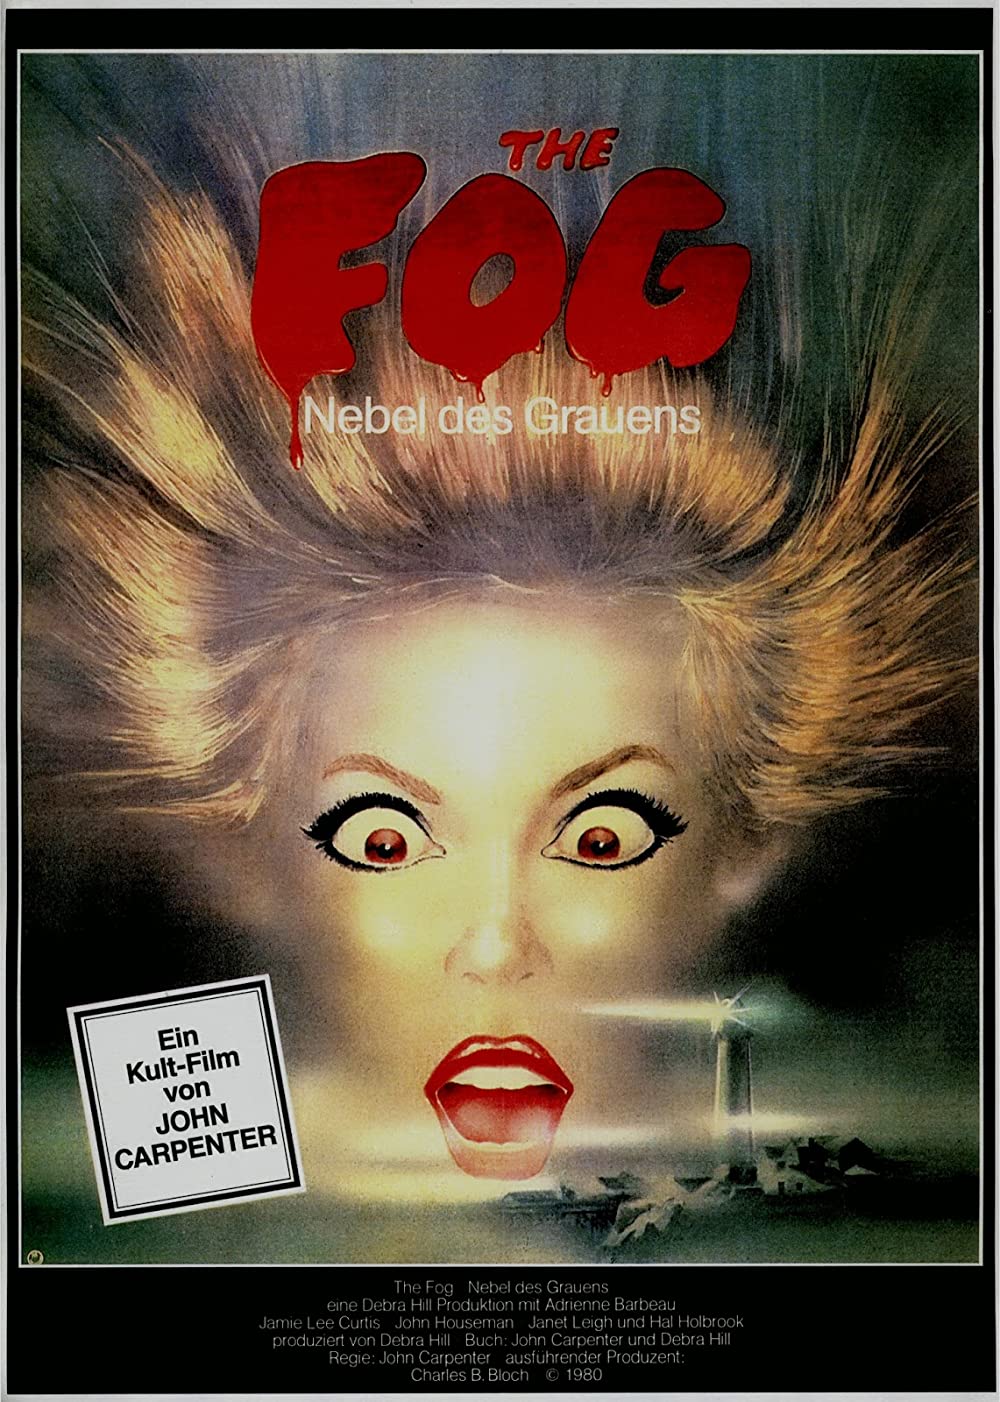 Filmbeschreibung zu The Fog - Nebel des Grauens (1980)